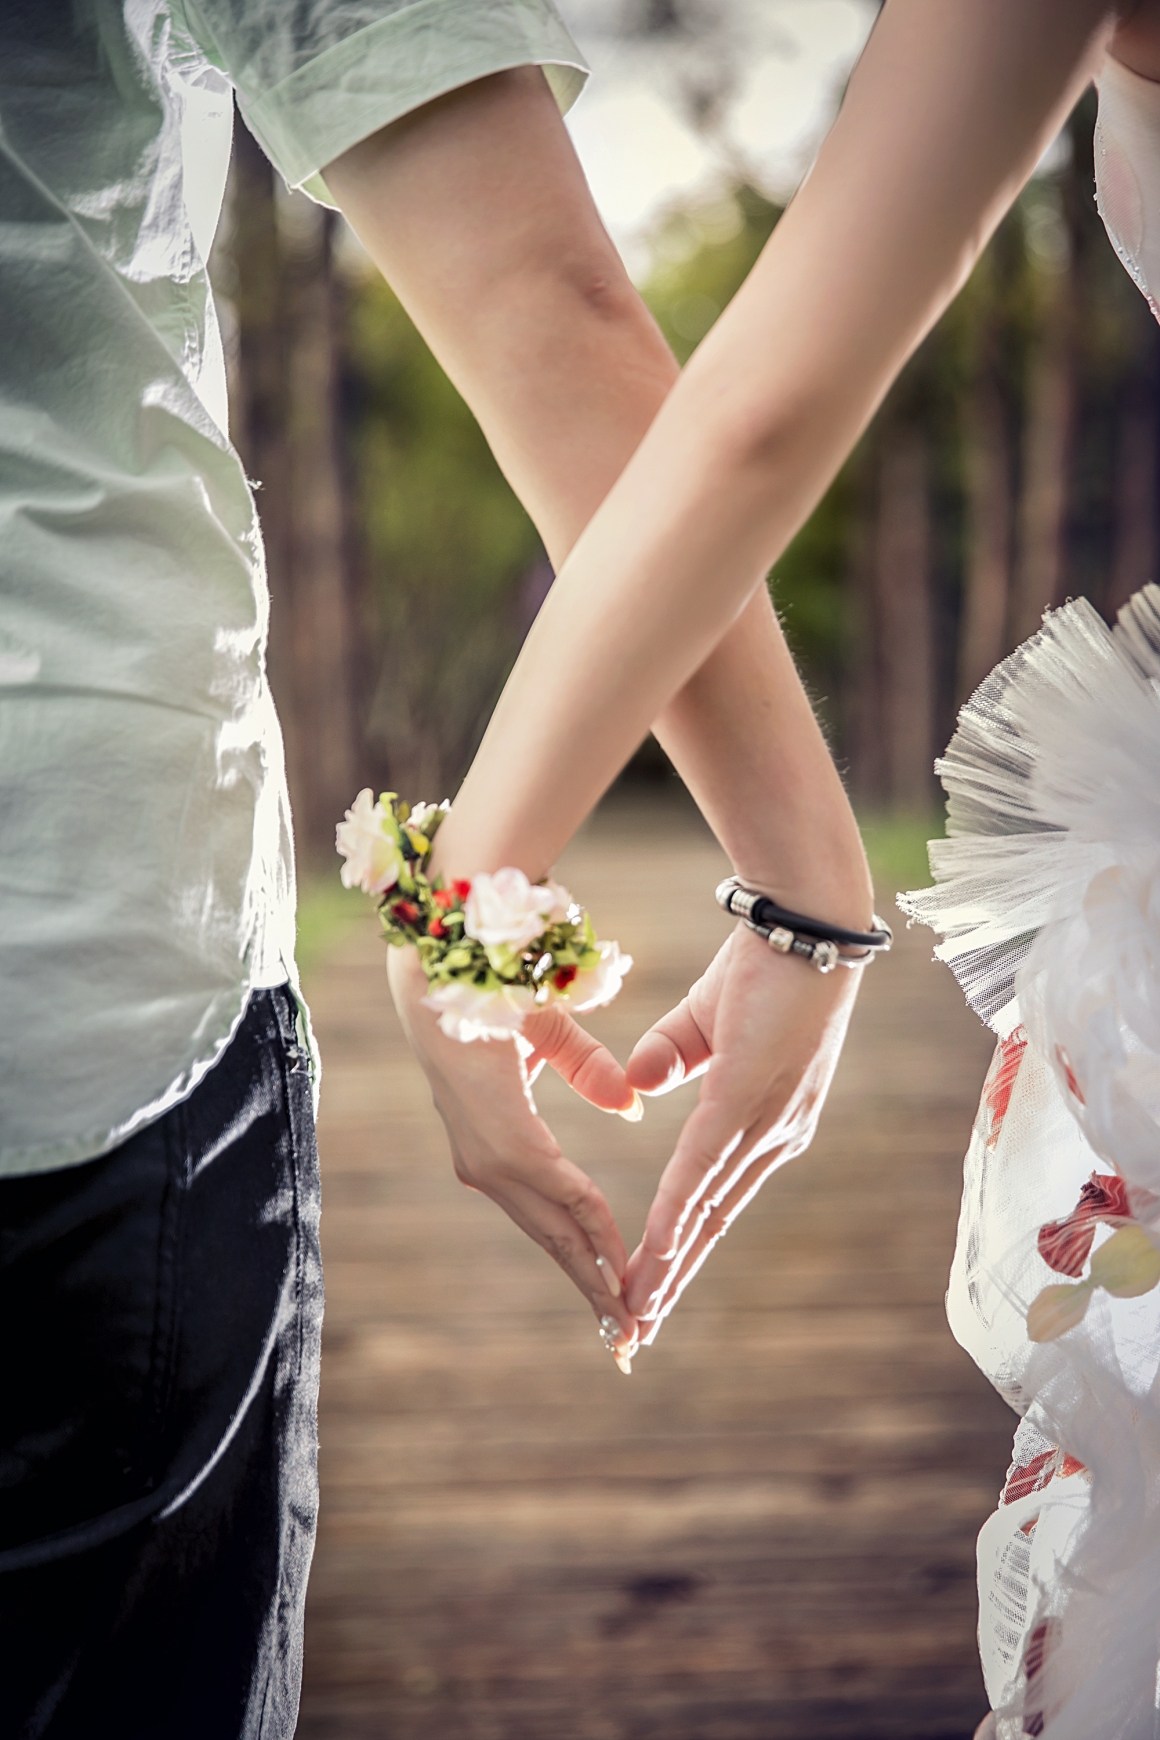 十二星座夢想中的婚禮 提供妳絕佳的幸福策略